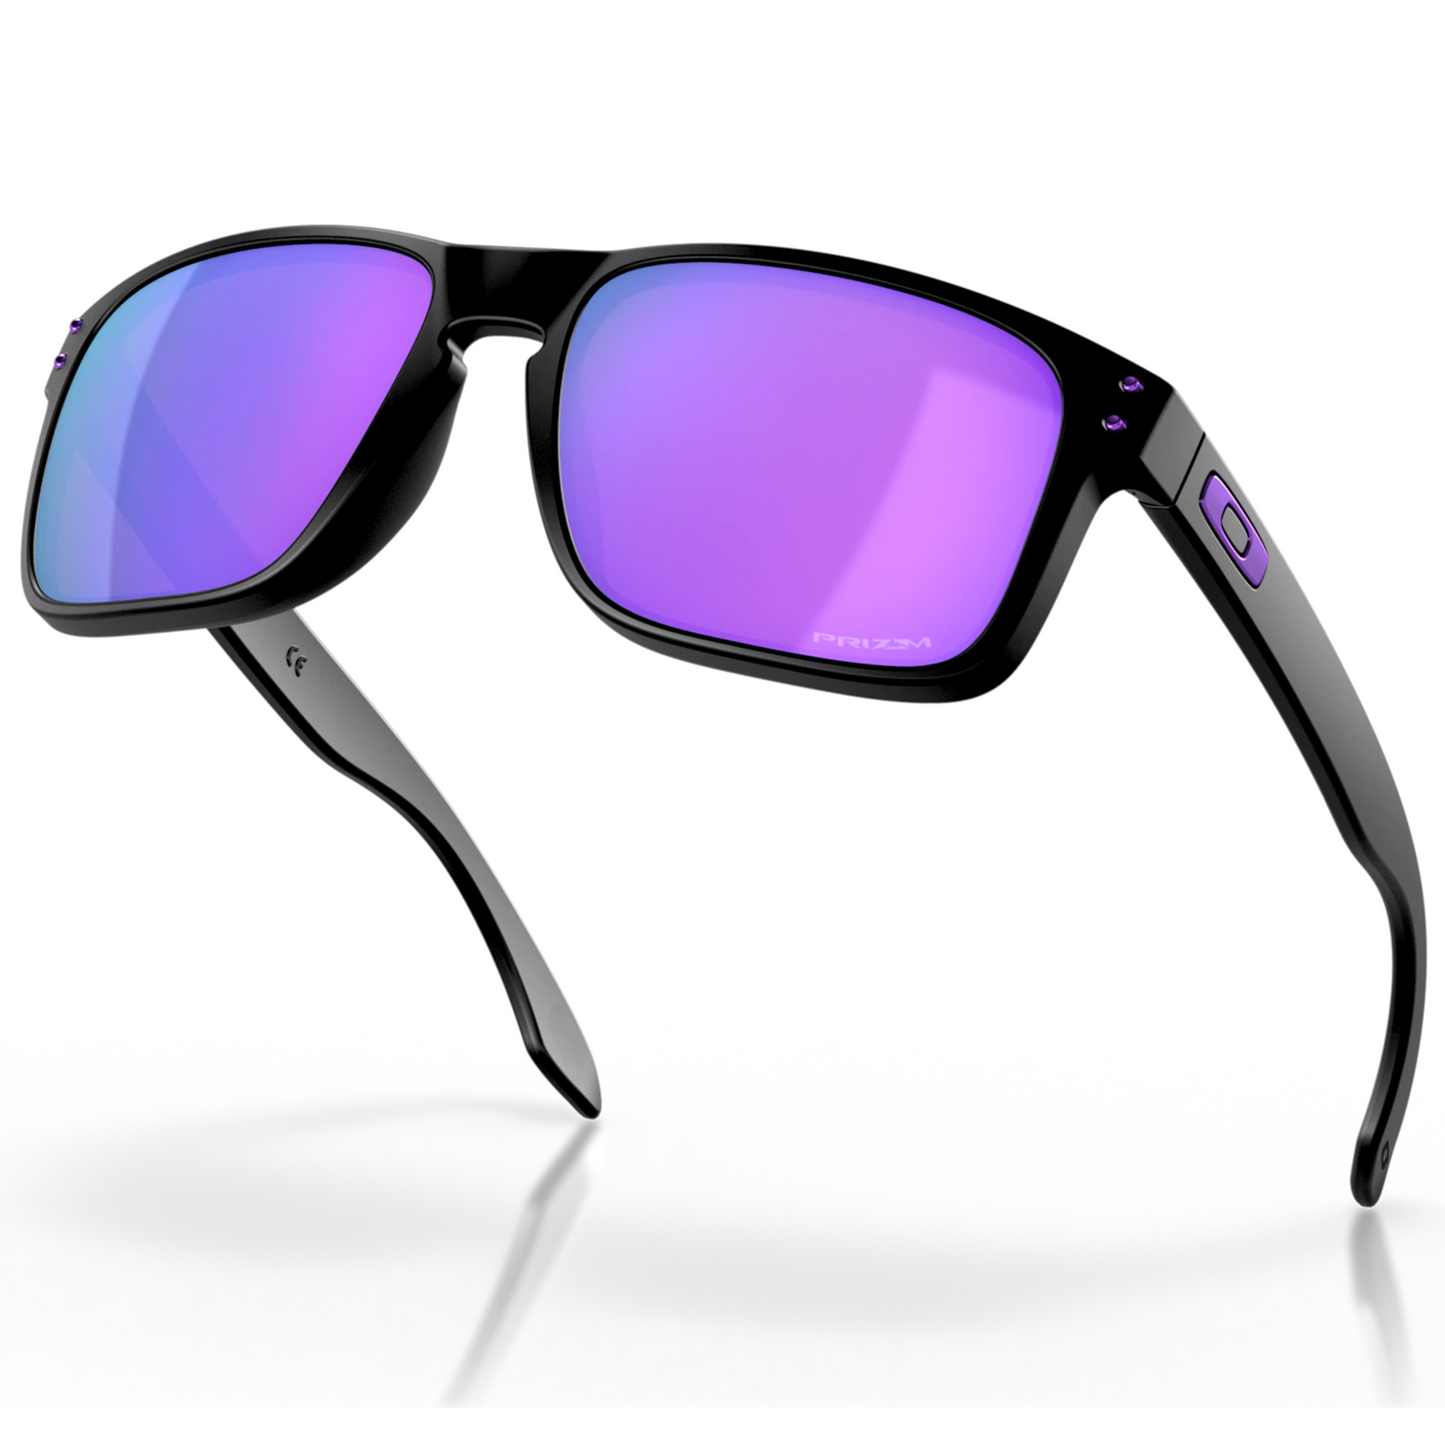 Oakley Holbrook Sunglasses (Matte Black) Prizm Violet Lens - Free Case